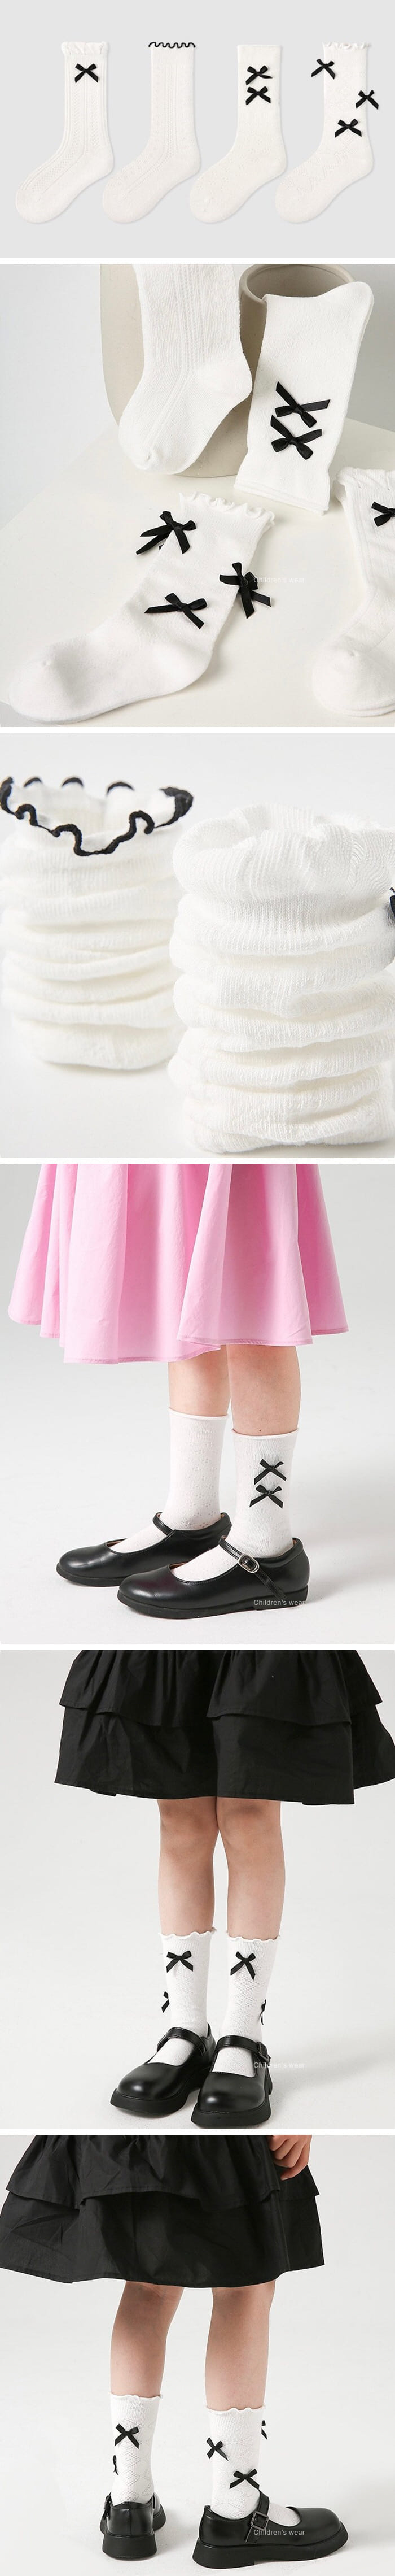 A.JAYE - Korean Children Fashion - #discoveringself - 631 Two Ribbon Socks - 2